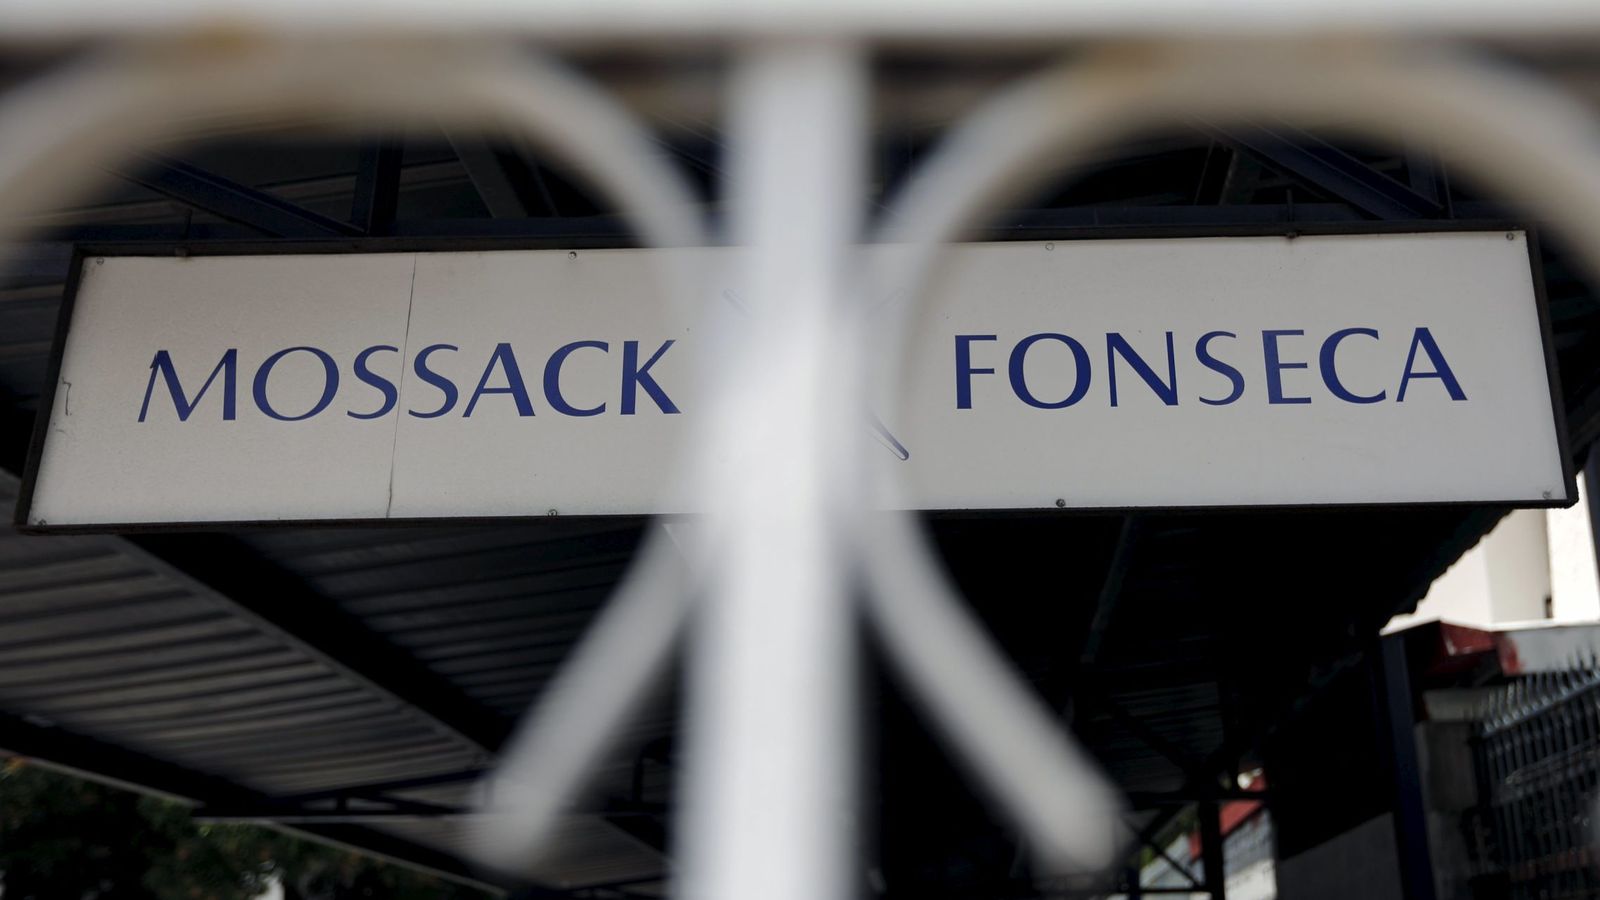 Foto: El despacho de abogados Mossack Fonseca, implicado en los 'Papeles de Panamá' (Reuters).